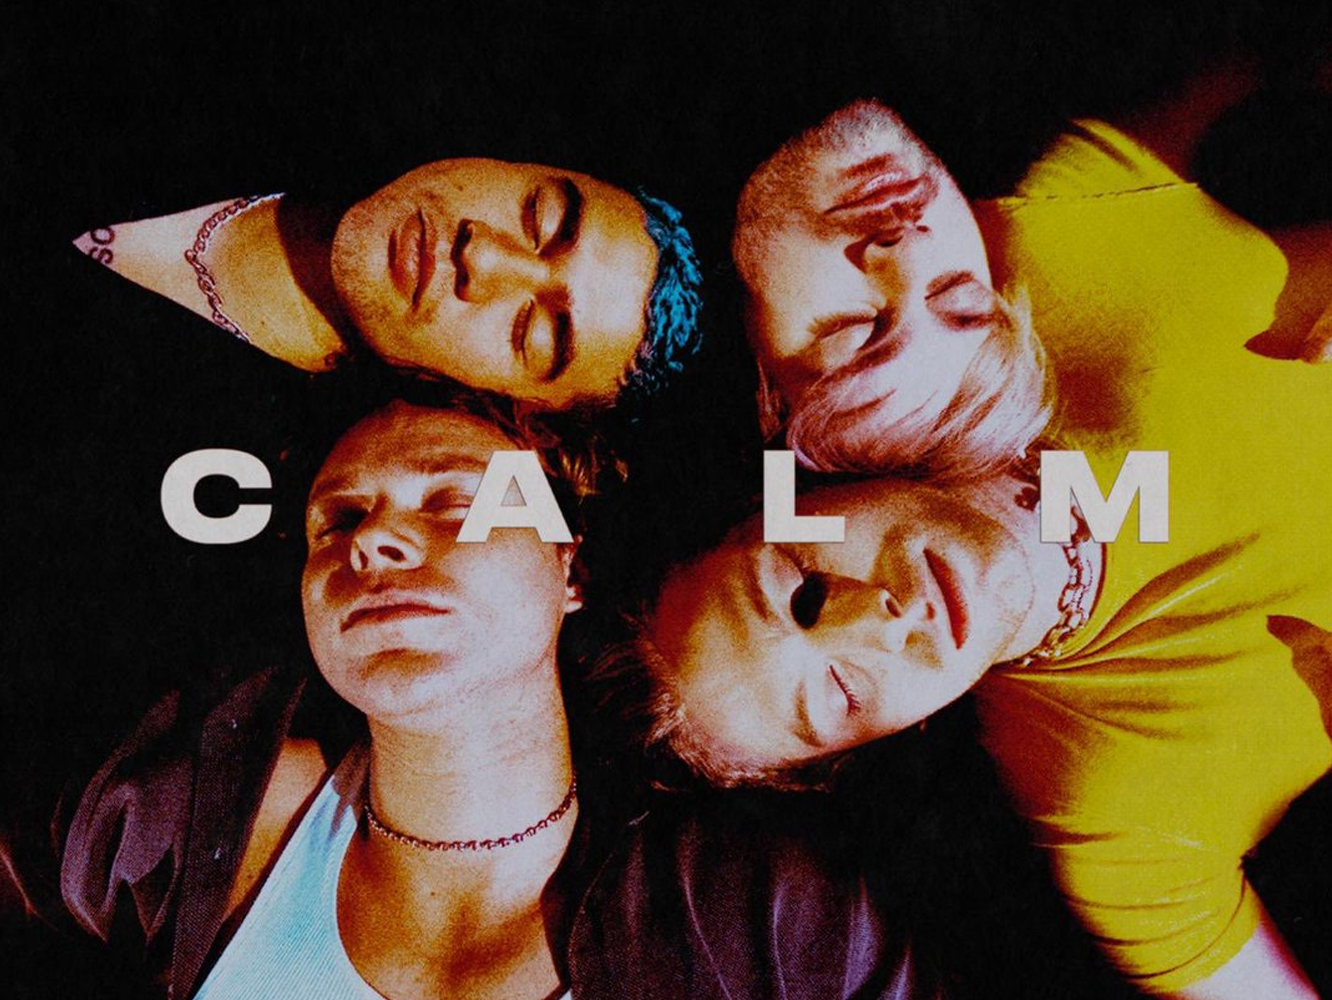  5 Seconds Of Summer anuncian el lanzamiento de ‘Calm’ y publican su nuevo single, ‘No Shame’